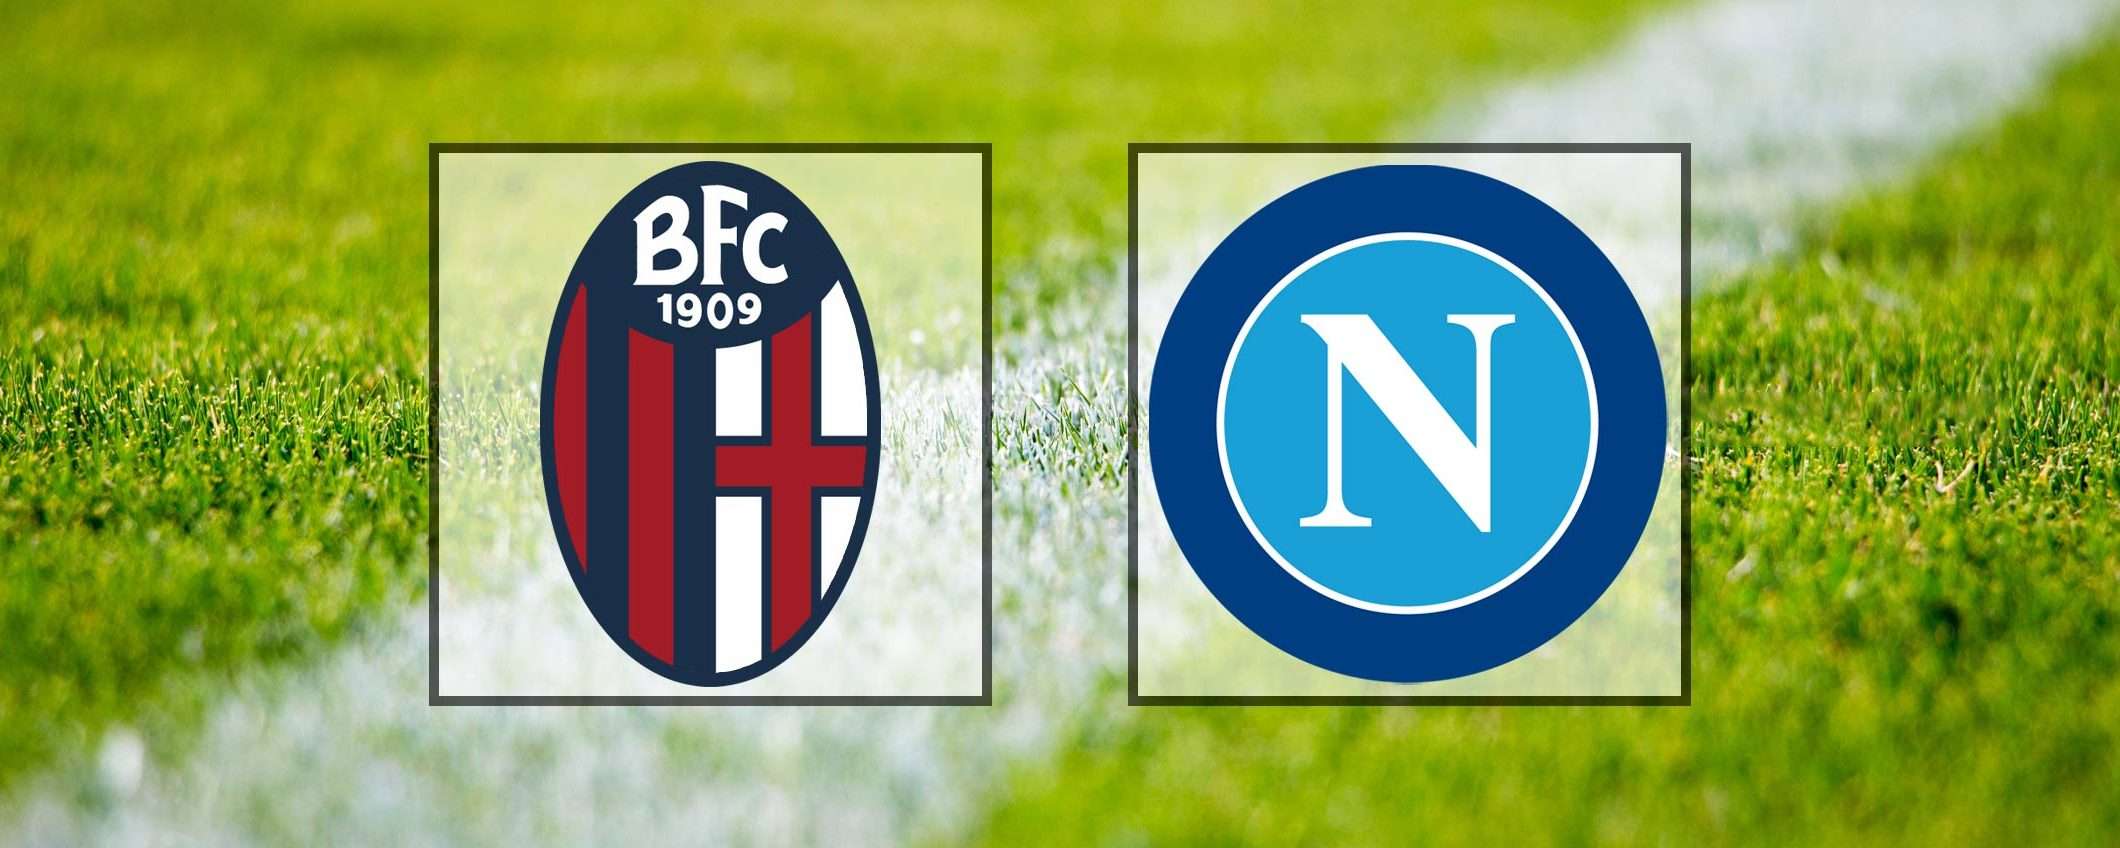 Come vedere Bologna-Napoli in streaming (Serie A)